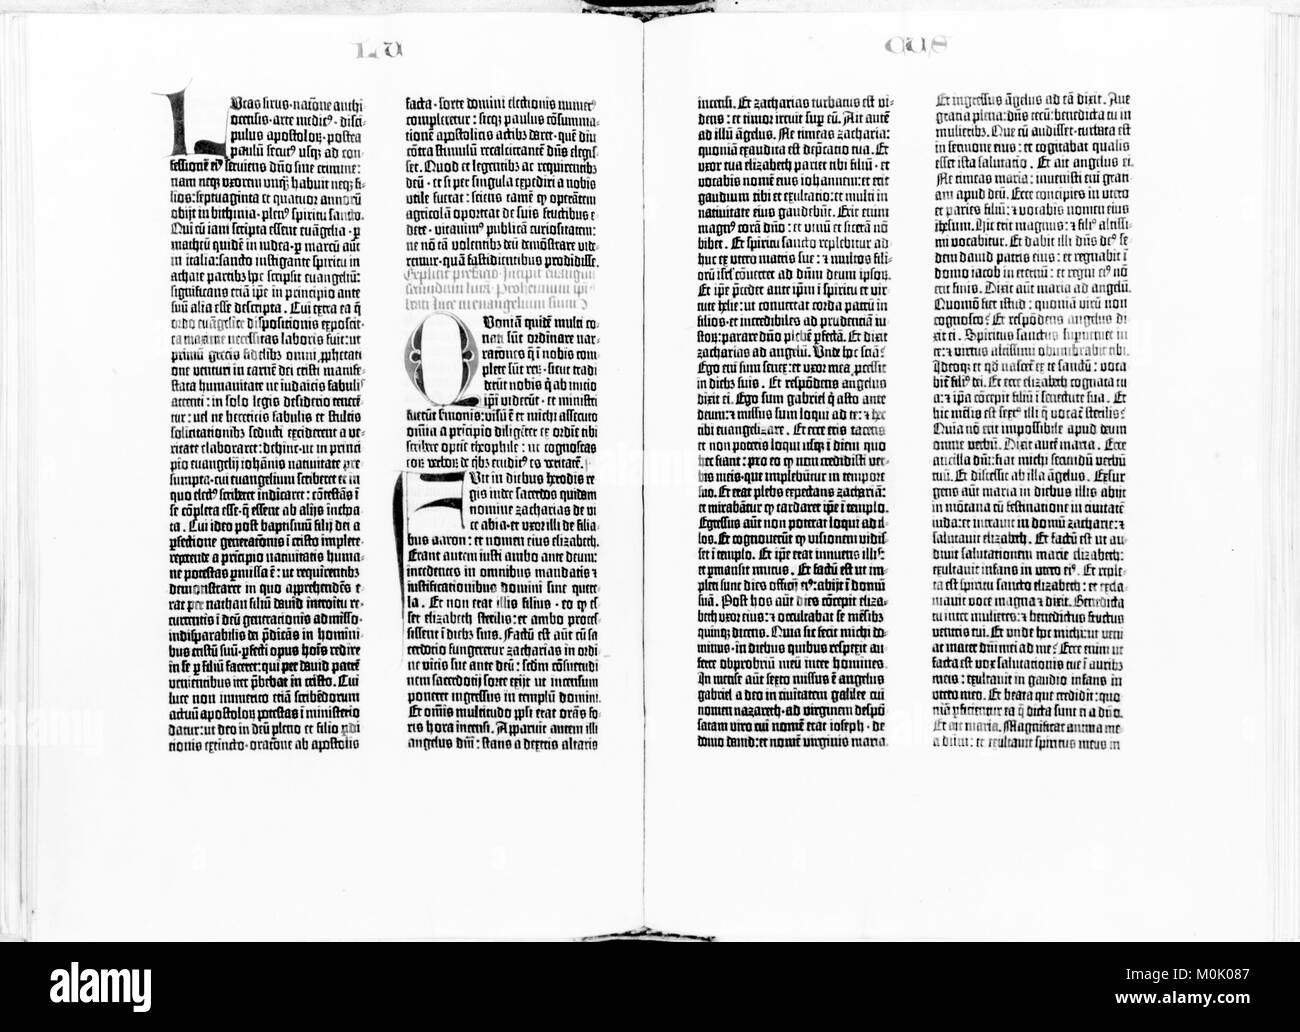 Bible de Gutenberg. La Bibliothèque du Congrès des Etats-Unis exemplaire de la Bible de Gutenberg ouvrir au début de l'Évangile de saint Luc. Banque D'Images